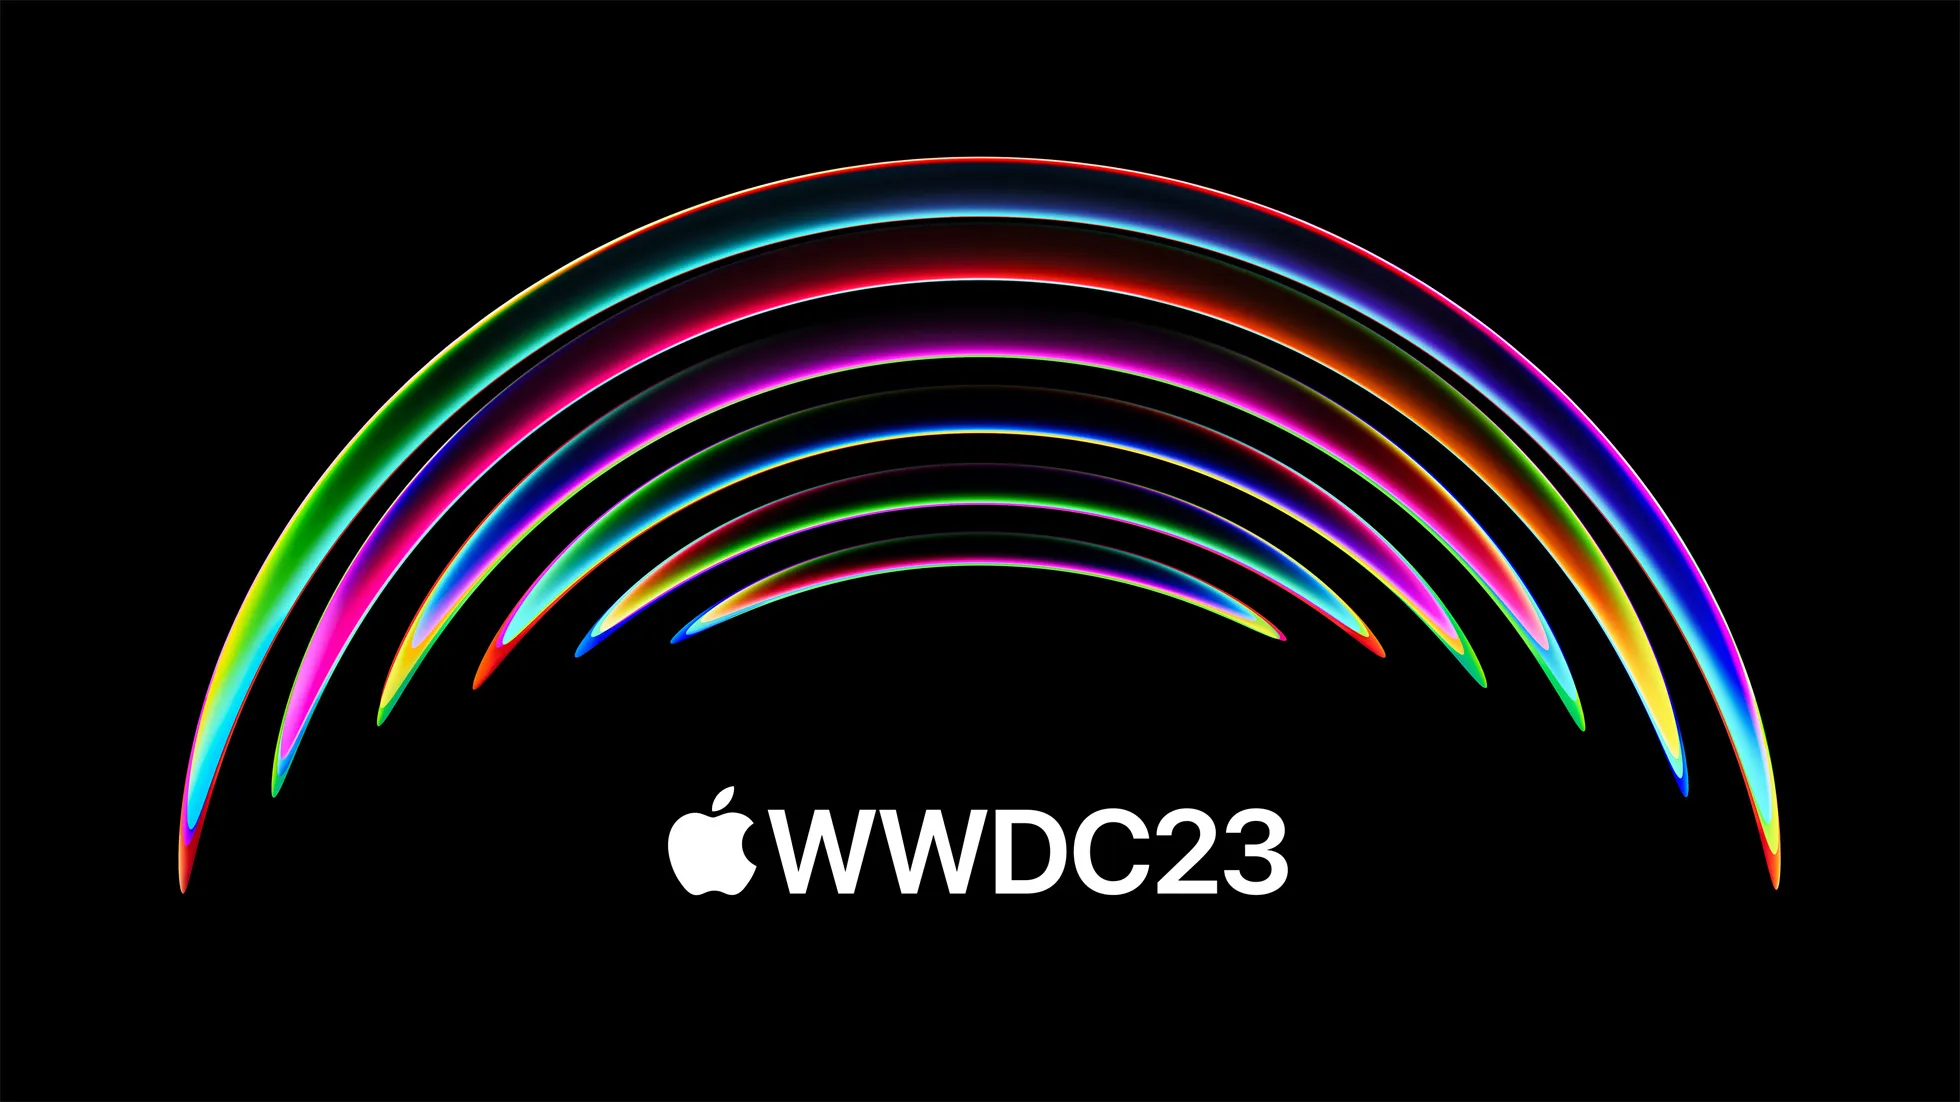 Sự kiện WWDC 2023 của Apple sẽ diễn ra từ 6/6 đến 10/6